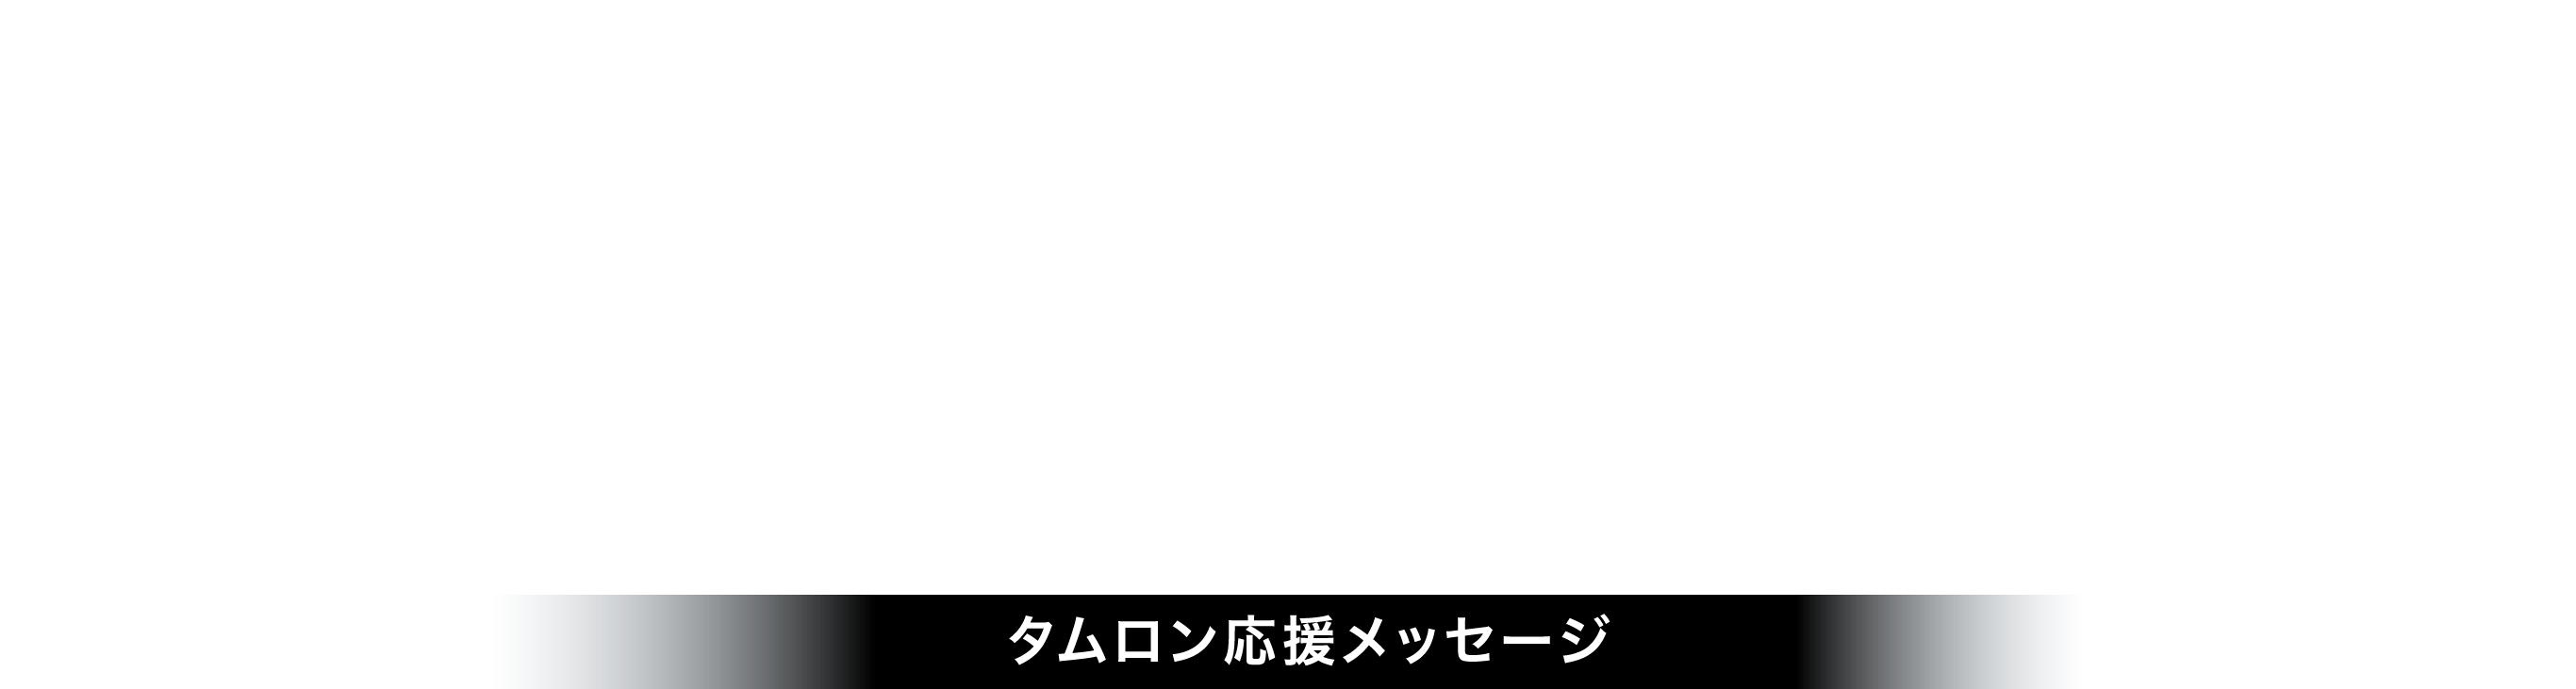 Thnka You TAMRON タムロン応援メッセージ